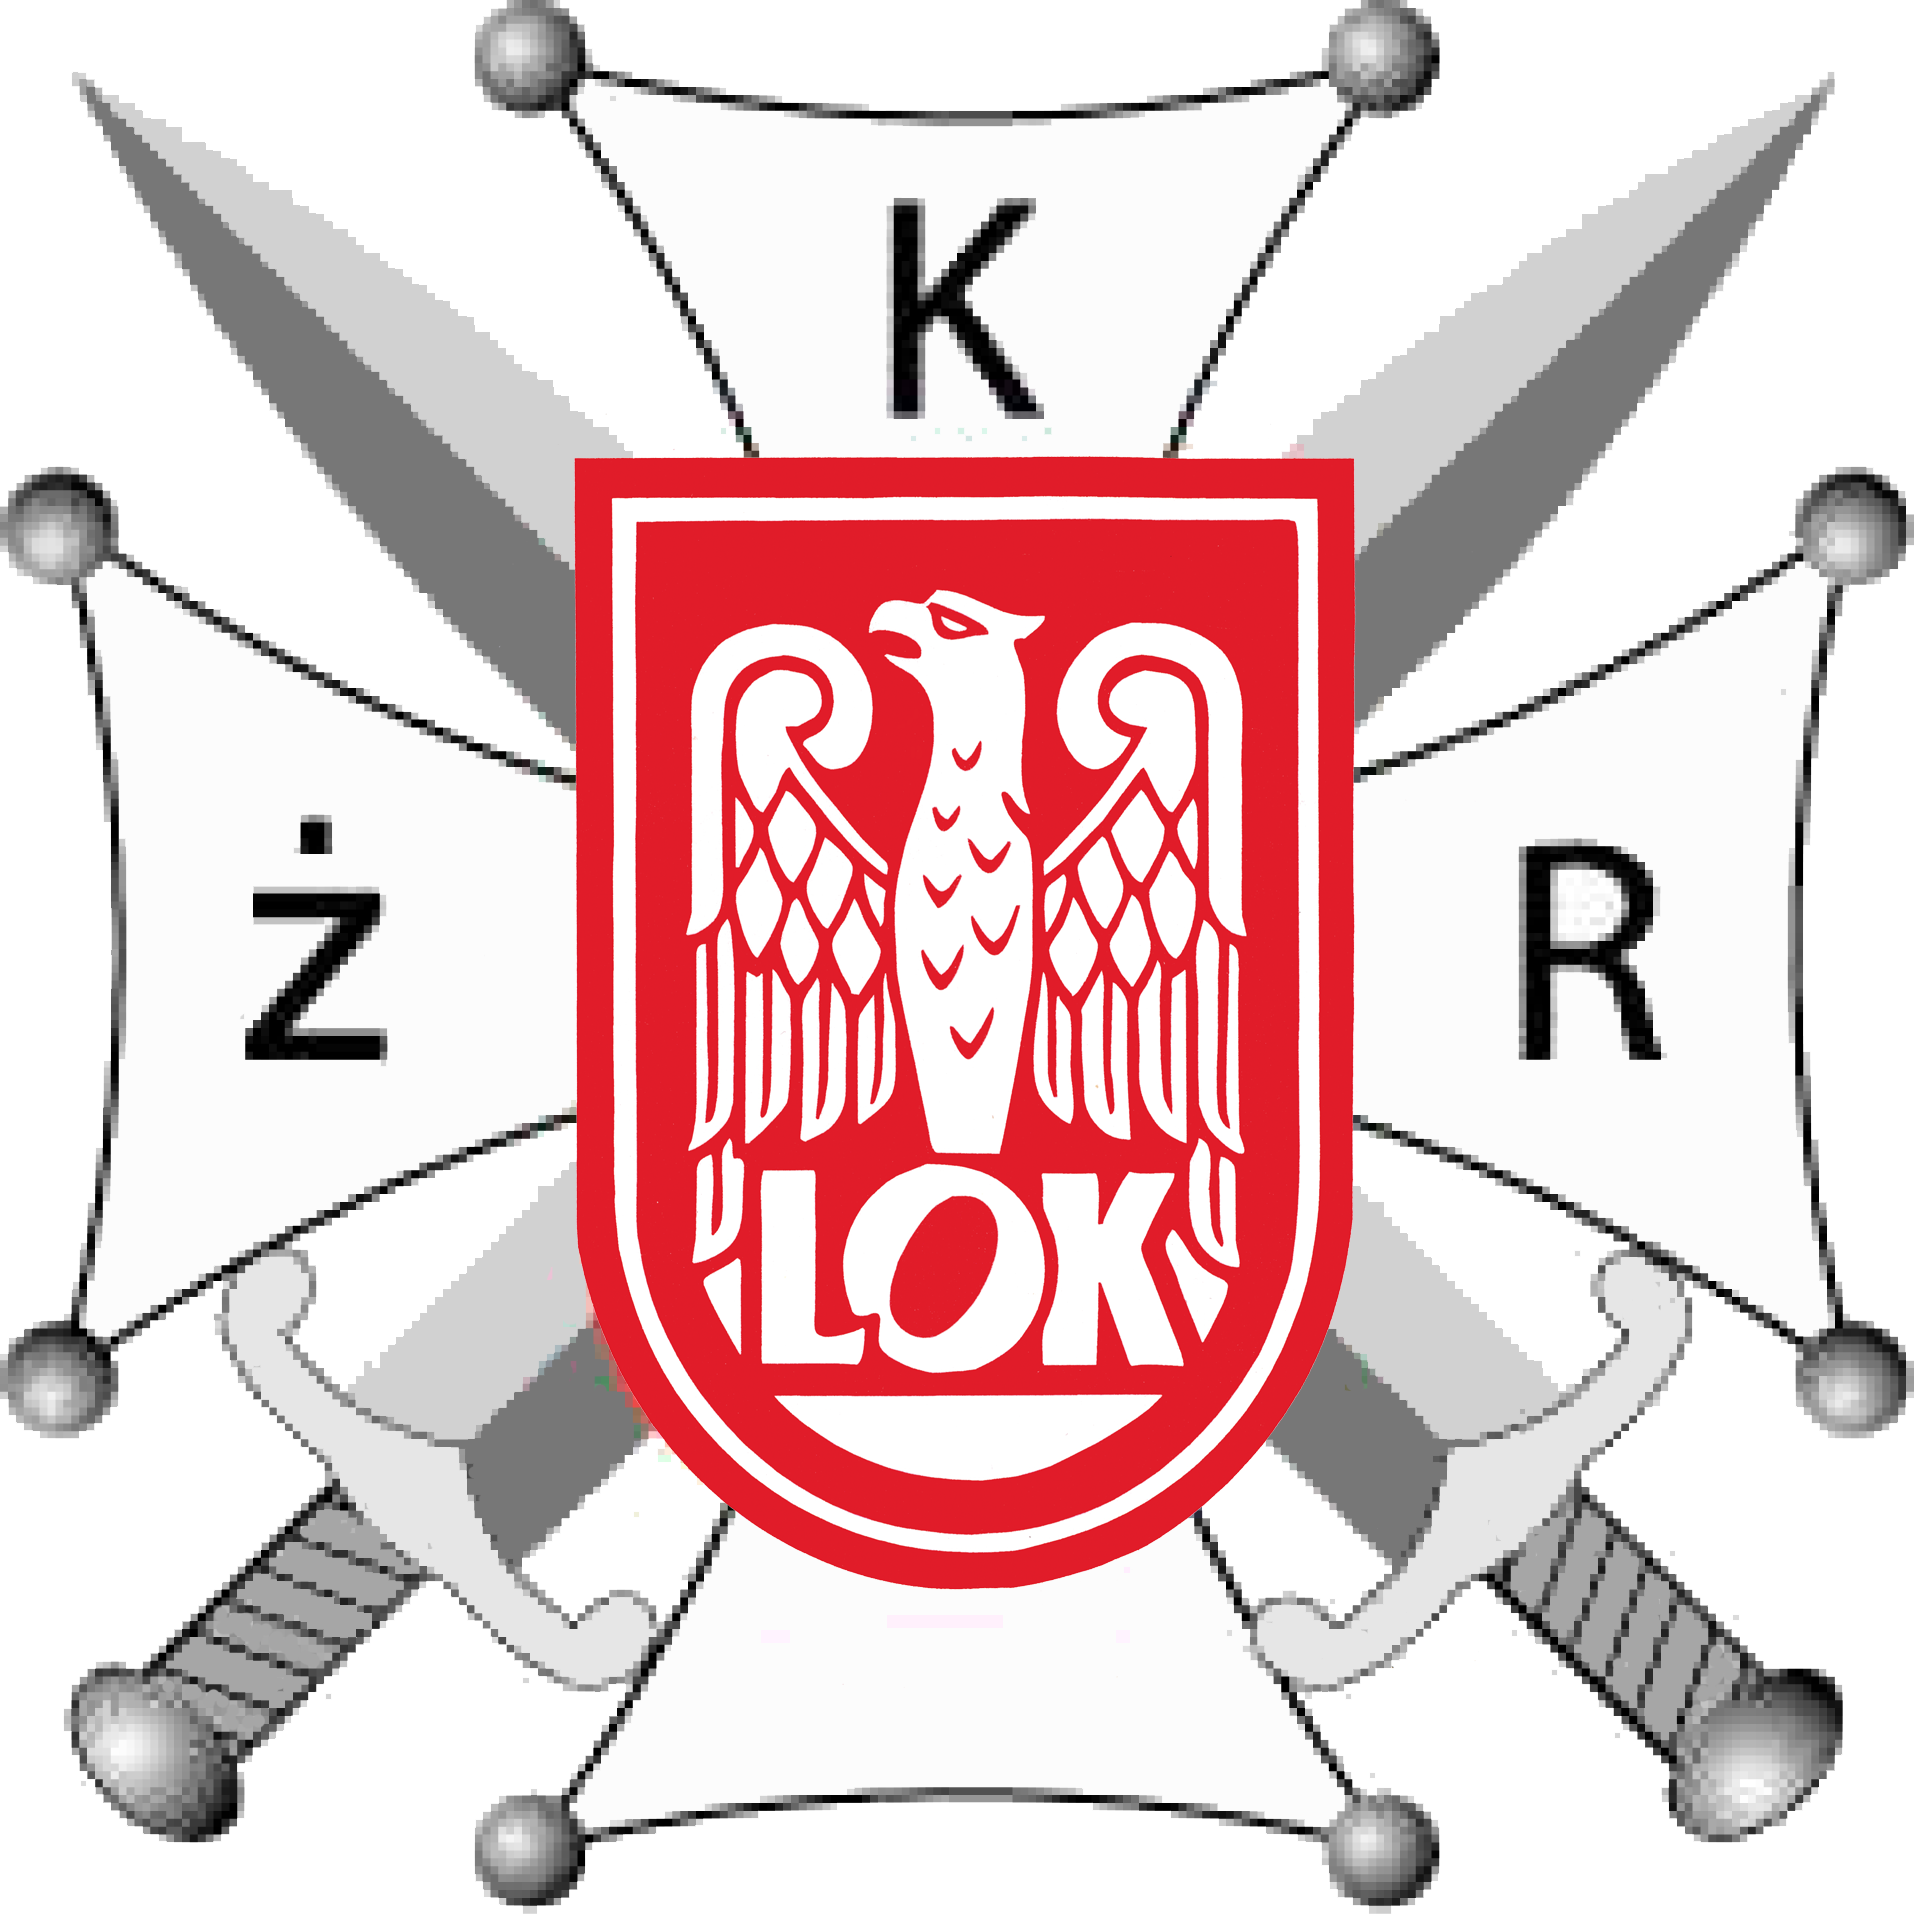 logo kżr